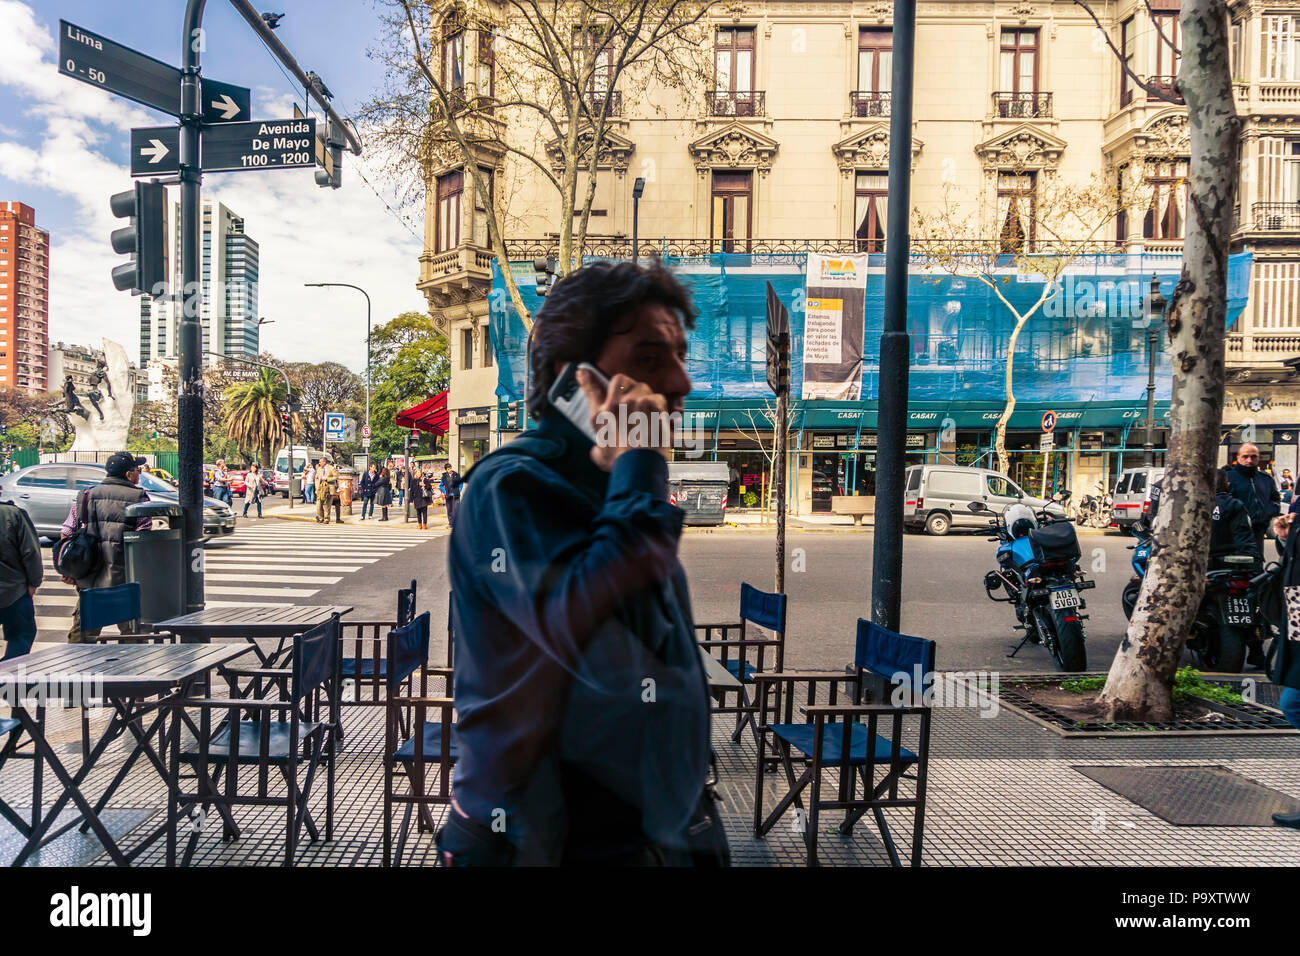 Menschen gehen auf die Straße und am Telefon sprechen, der Avenida de Mayo, Buenos Aires, Argentinien Stockfoto